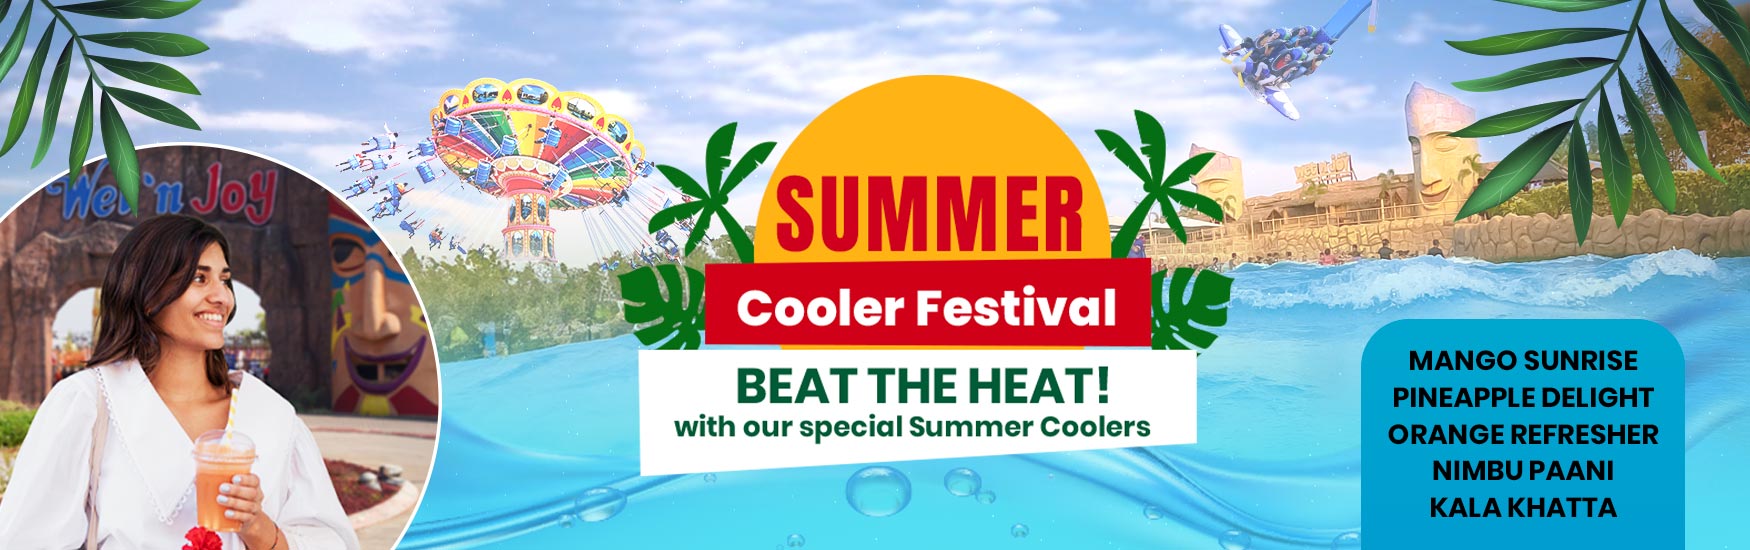 summer cooler festival at wetnjoy lonavala